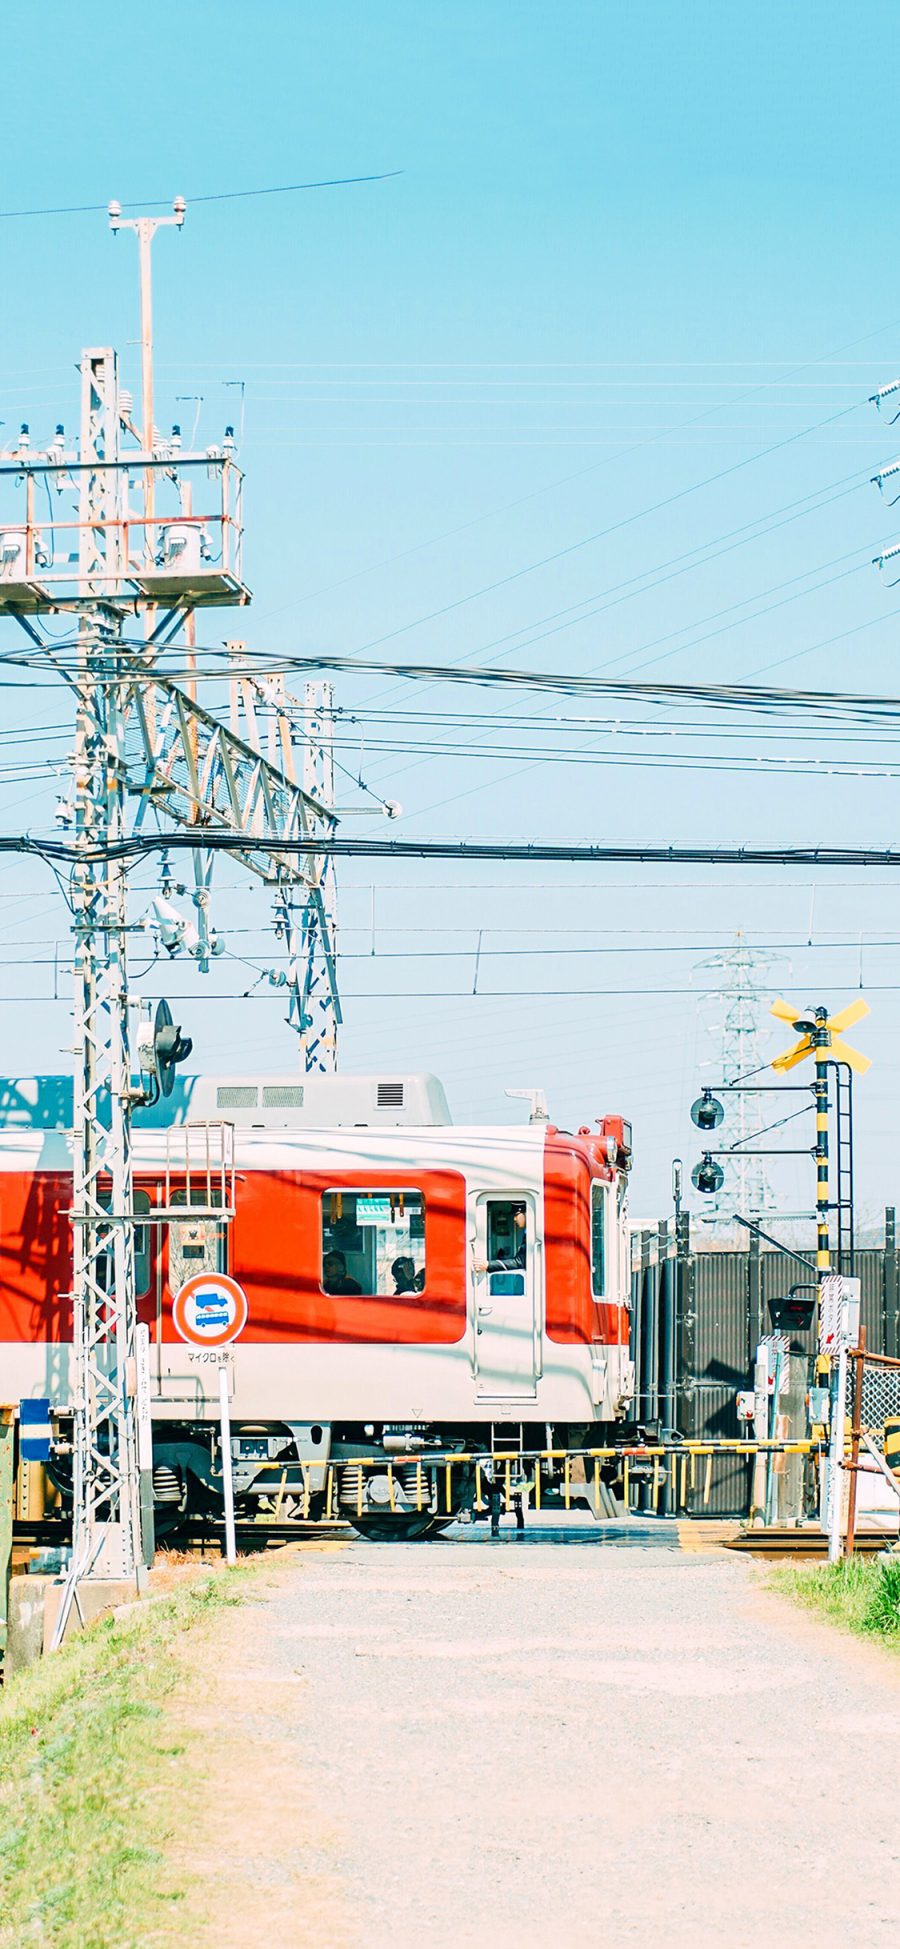 [2436×1125]火车 列车 日本 城市 电线 苹果手机壁纸图片